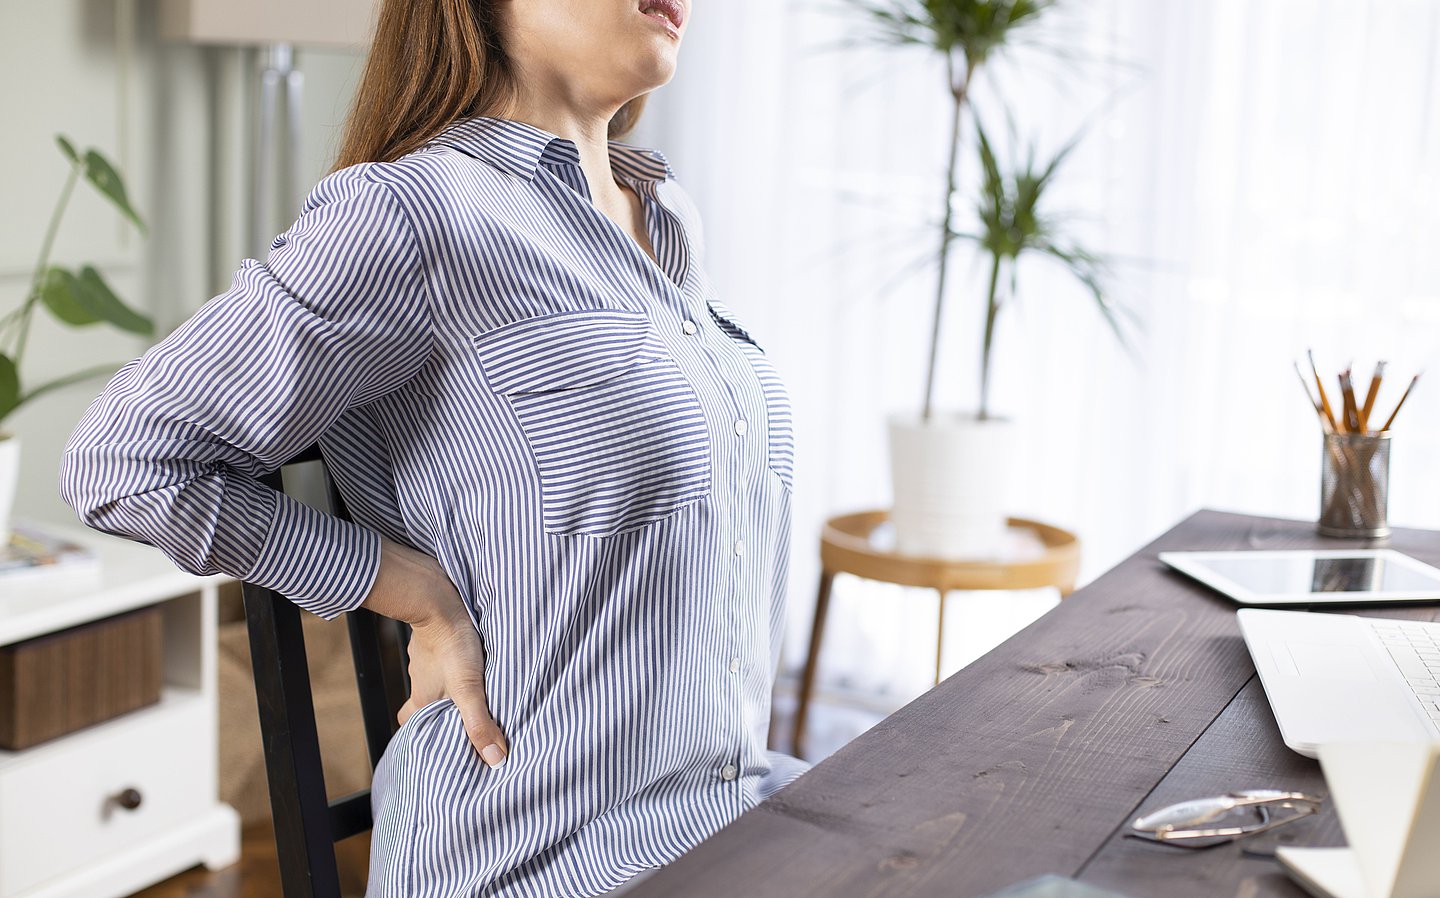 Foto: Eine Frau sitzt am Tisch und fasst sich an ihren schmerzenden Rücken.